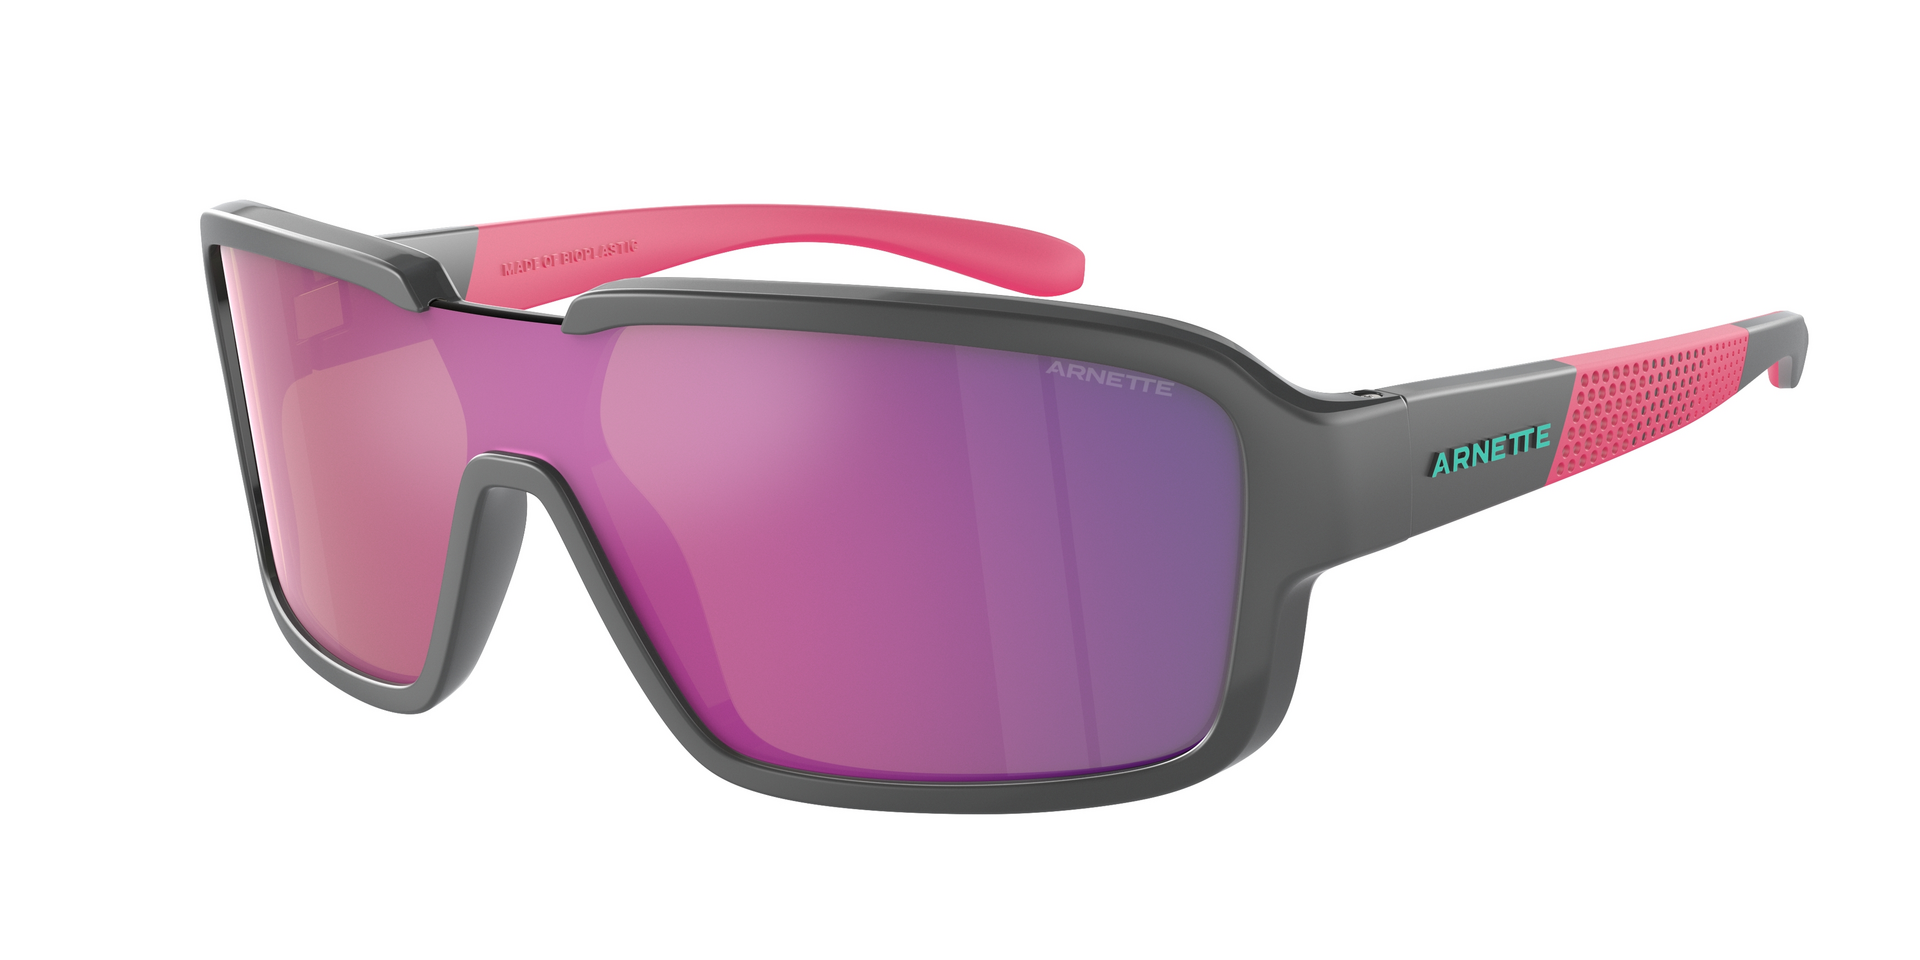 Das Bild zeigt die Sonnenbrille AN4335 28414X von der Marke Arnette in schwarz/rosa.